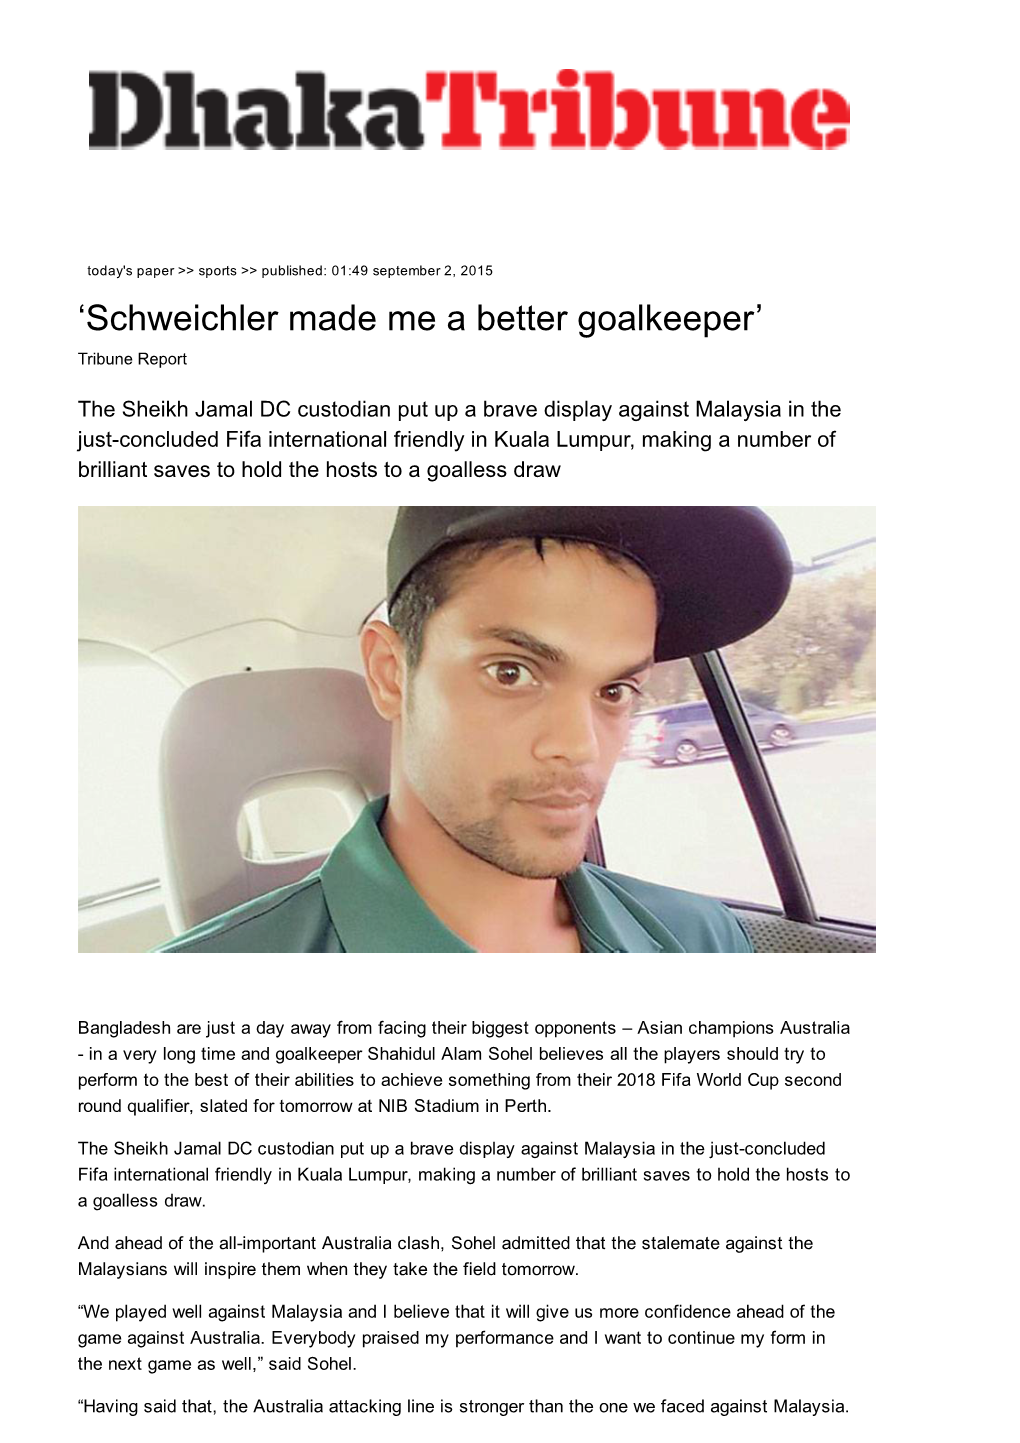 'Schweichler Made Me a Better Goalkeeper'